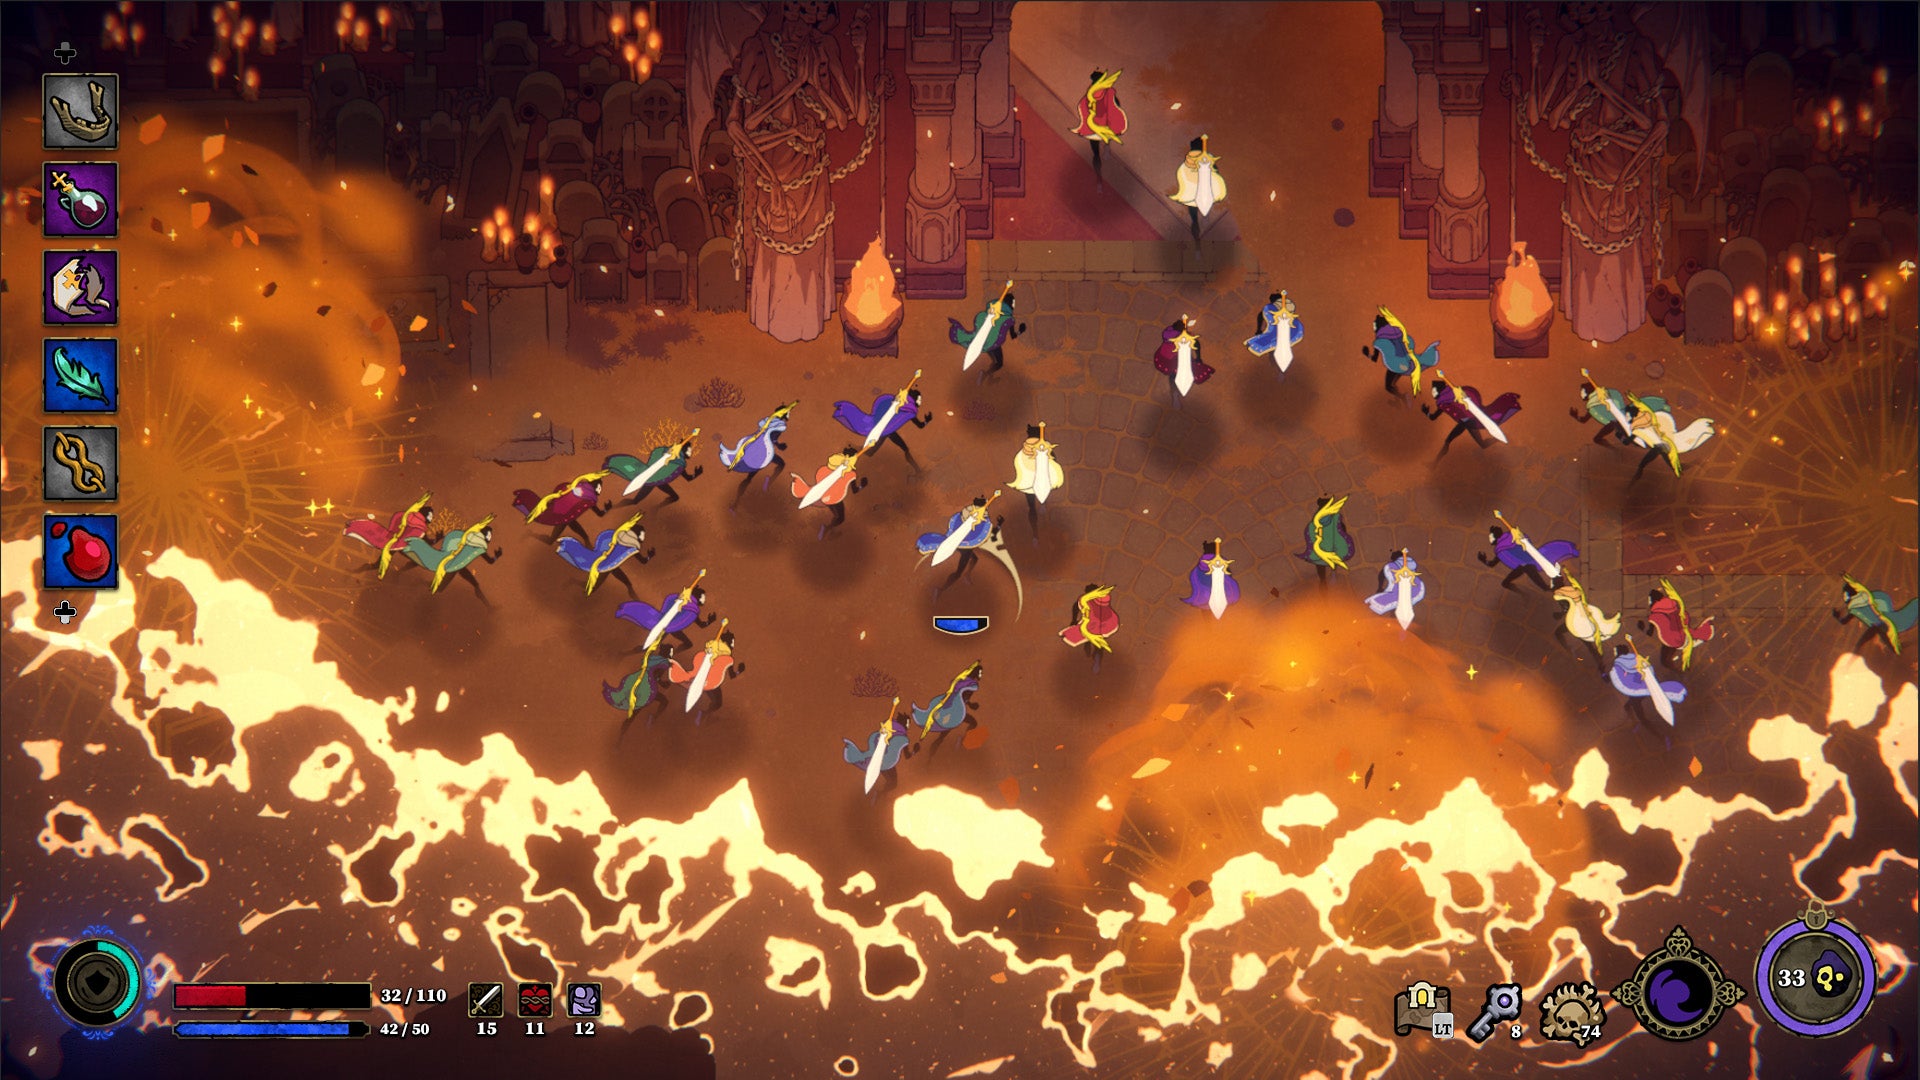 Une image vue de haut-ish montrant des dizaines de joueurs avec des épées dans le dos qui courent vers une structure. Ils sont poursuivis par le feu. L'image a une esthétique désertique et sablonneuse.